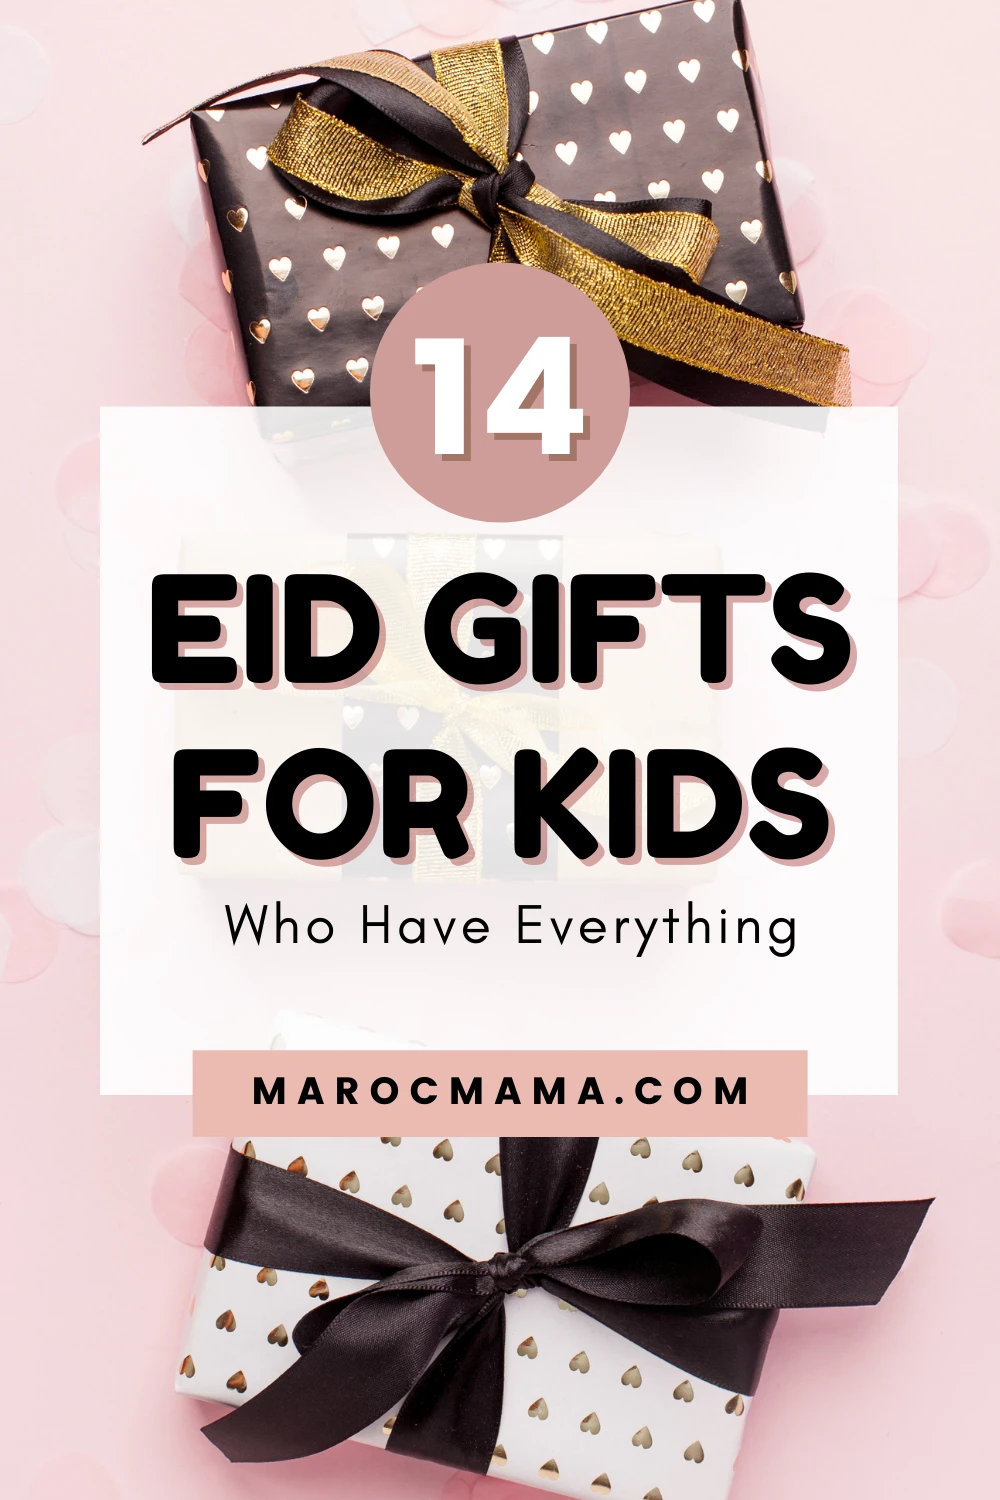 Eid Gift Ideas - The Hady Life